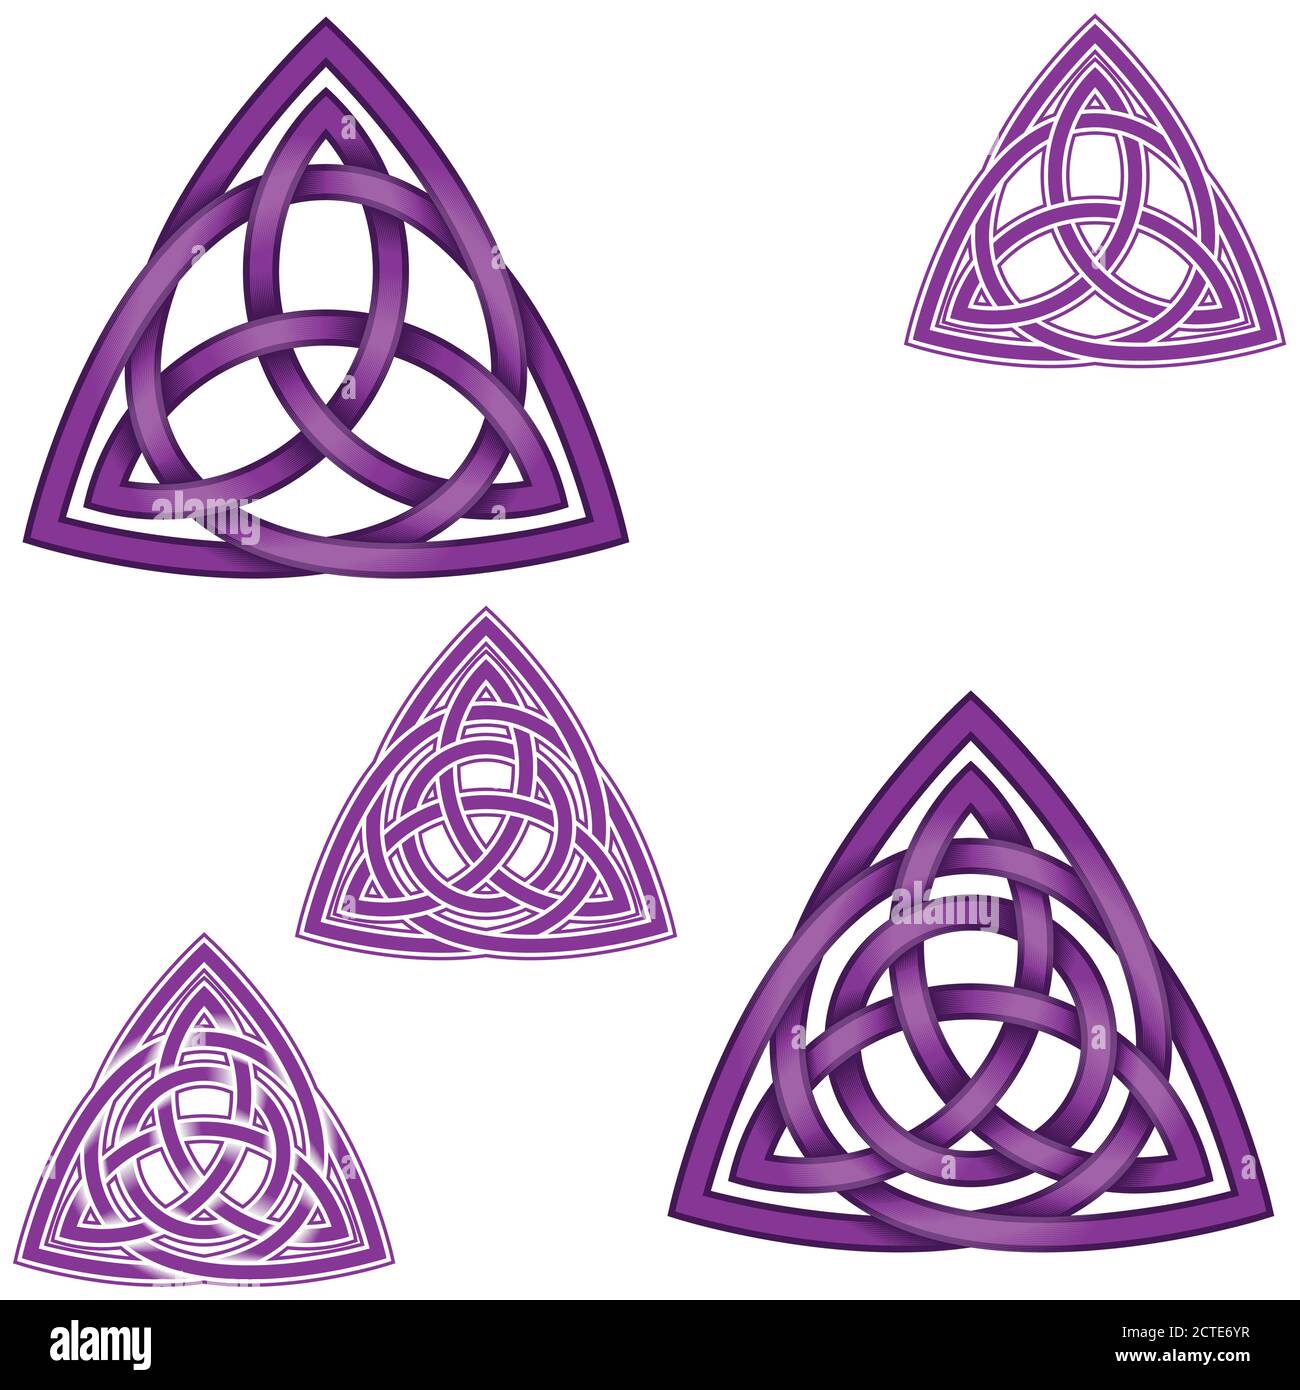 Vektor-Illustration des Symbols von Wicca, zwei Triquetra eins in einem anderen mit Kreis, alle auf weißem Hintergrund Stock Vektor